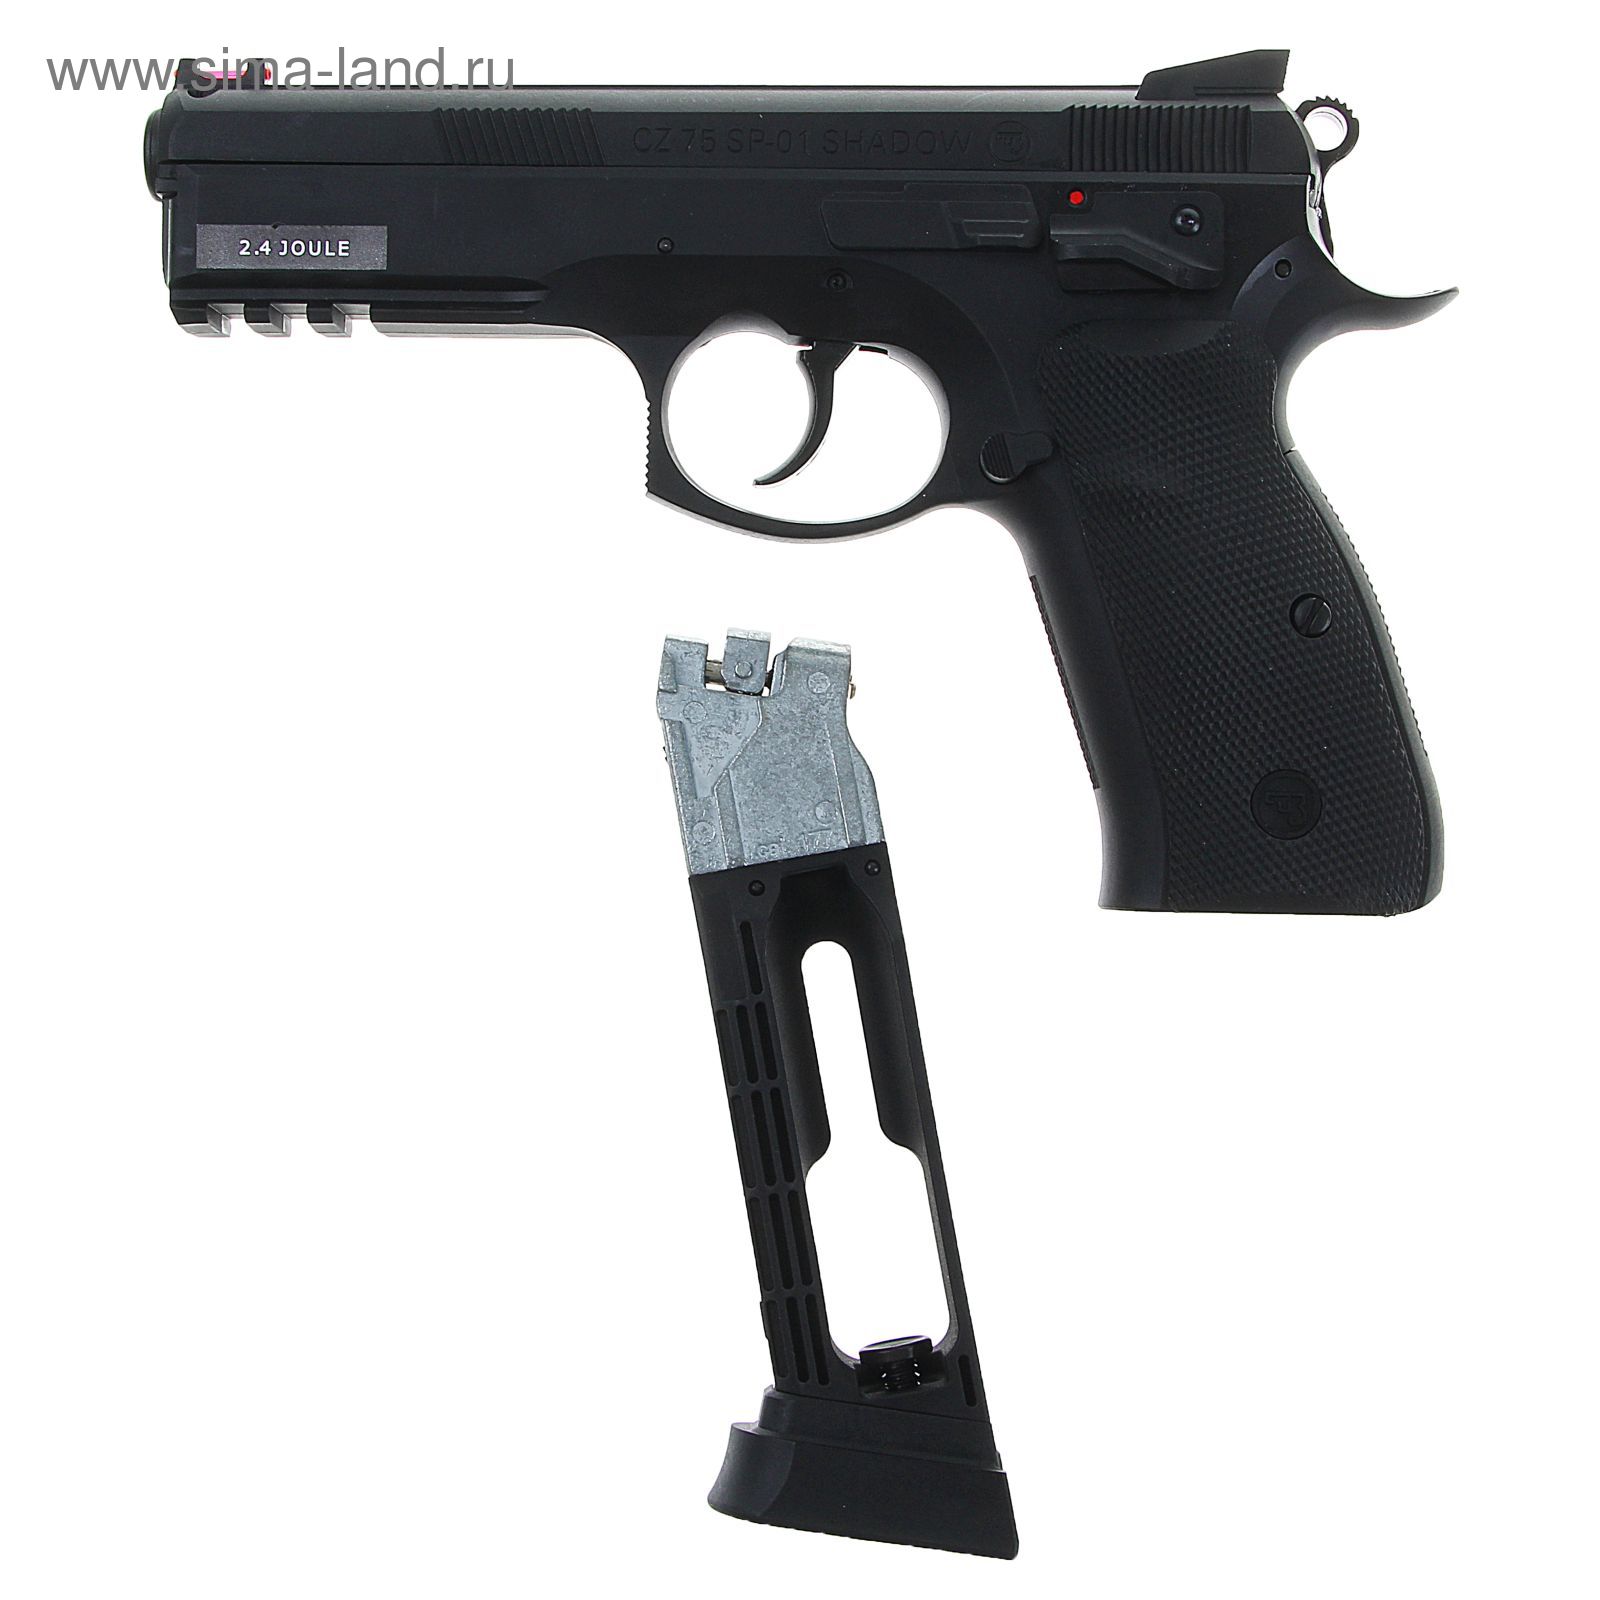 Пистолет пневматический CZ SP-01 SHADOW (17526) кал. 4,5 мм